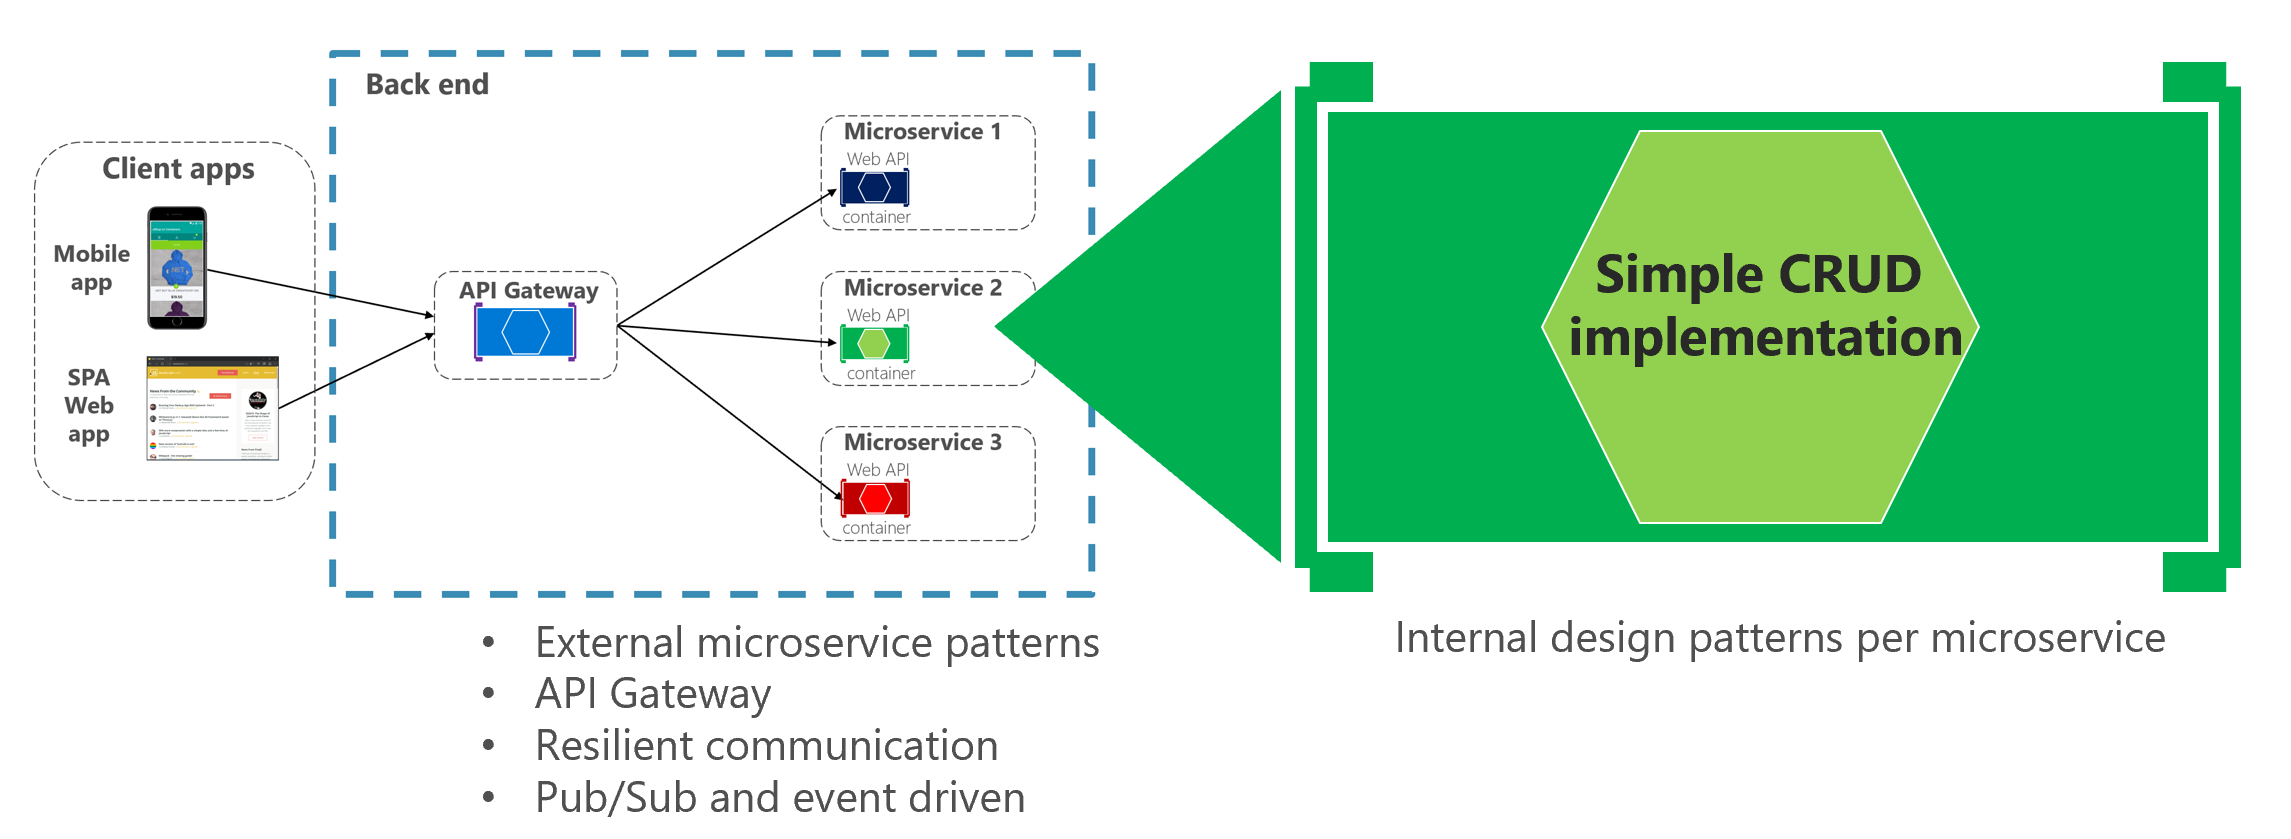 Basit bir CRUD mikro hizmet iç tasarım deseni gösteren diyagram.